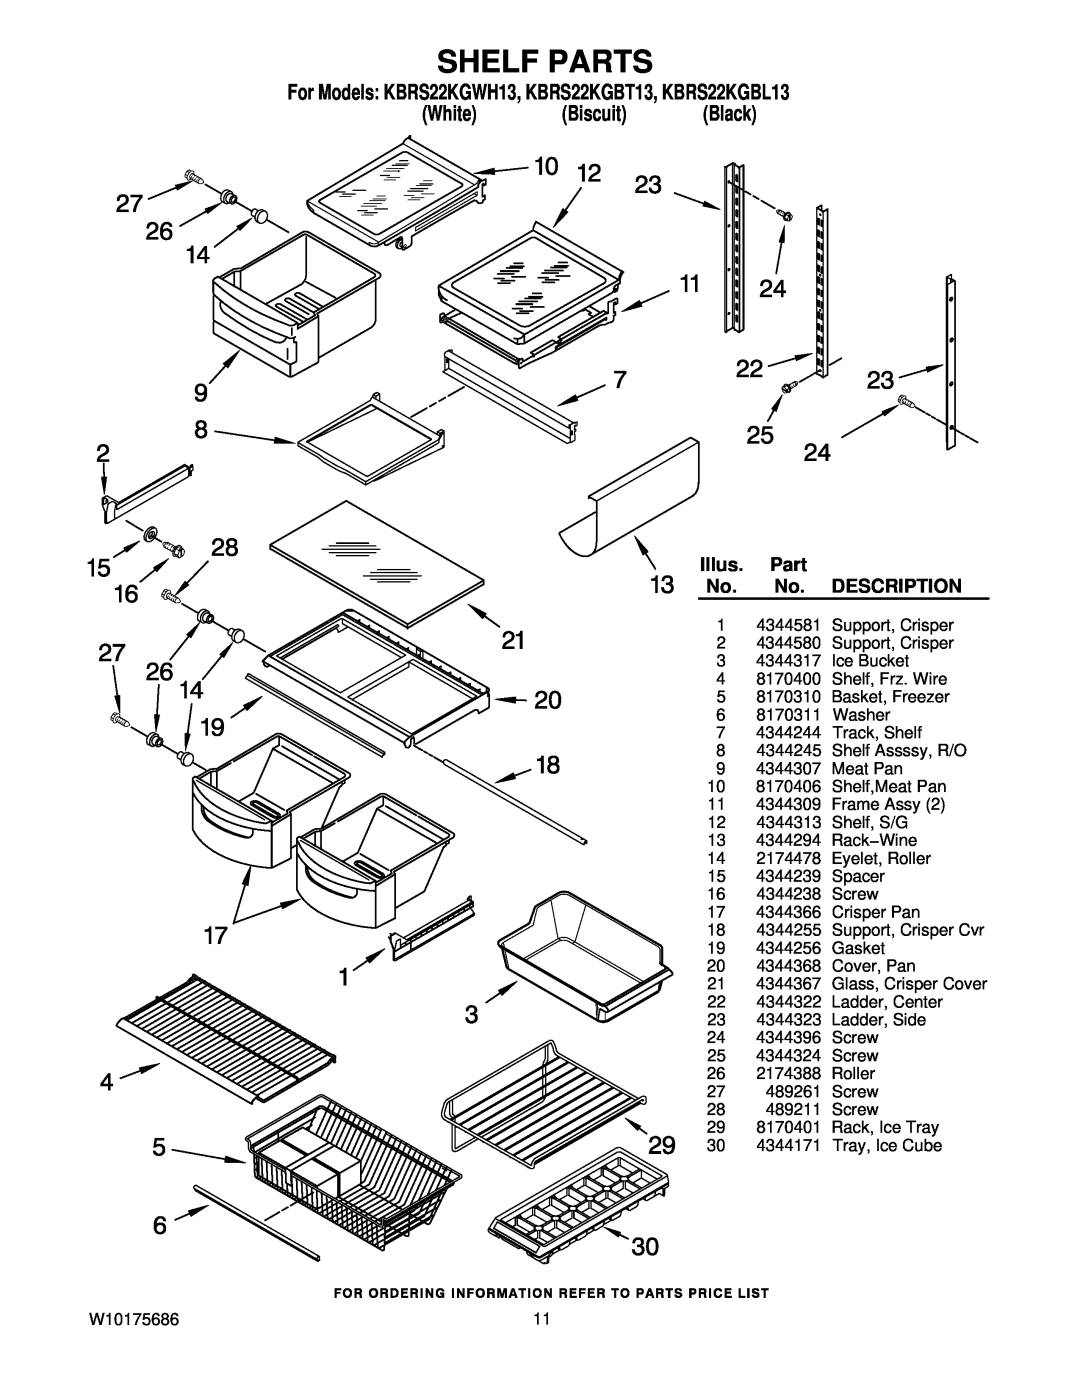 KitchenAid Shelf Parts, For Models KBRS22KGWH13, KBRS22KGBT13, KBRS22KGBL13, White Biscuit Black, Illus, Description 